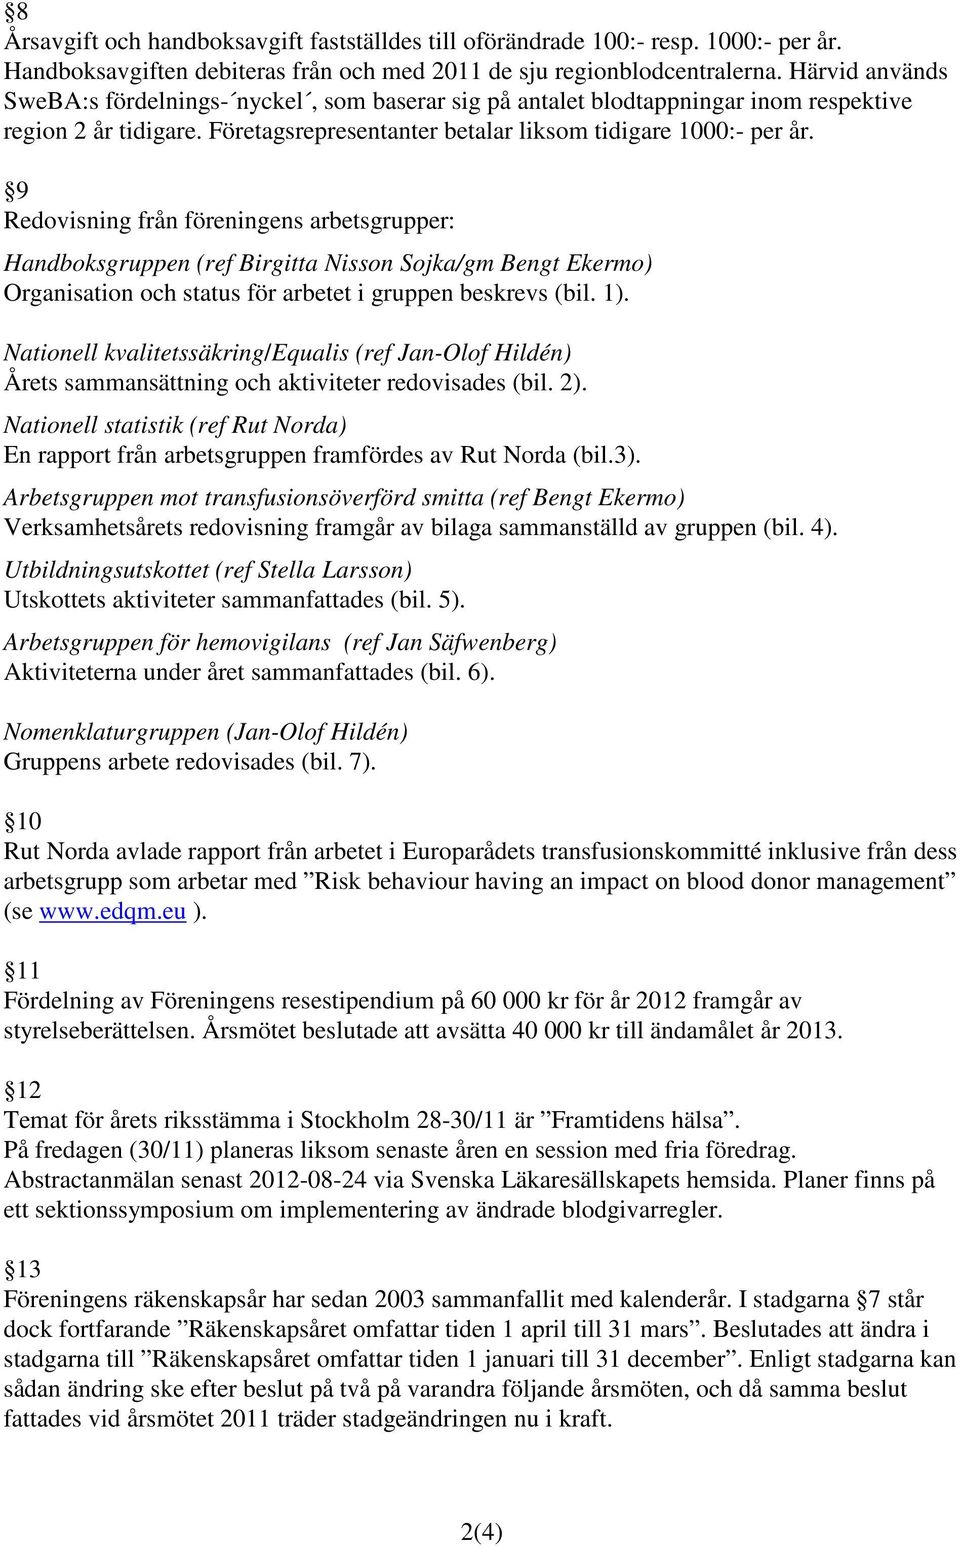 9 Redovisning från föreningens arbetsgrupper: Handboksgruppen (ref Birgitta Nisson Sojka/gm Bengt Ekermo) Organisation och status för arbetet i gruppen beskrevs (bil. 1).